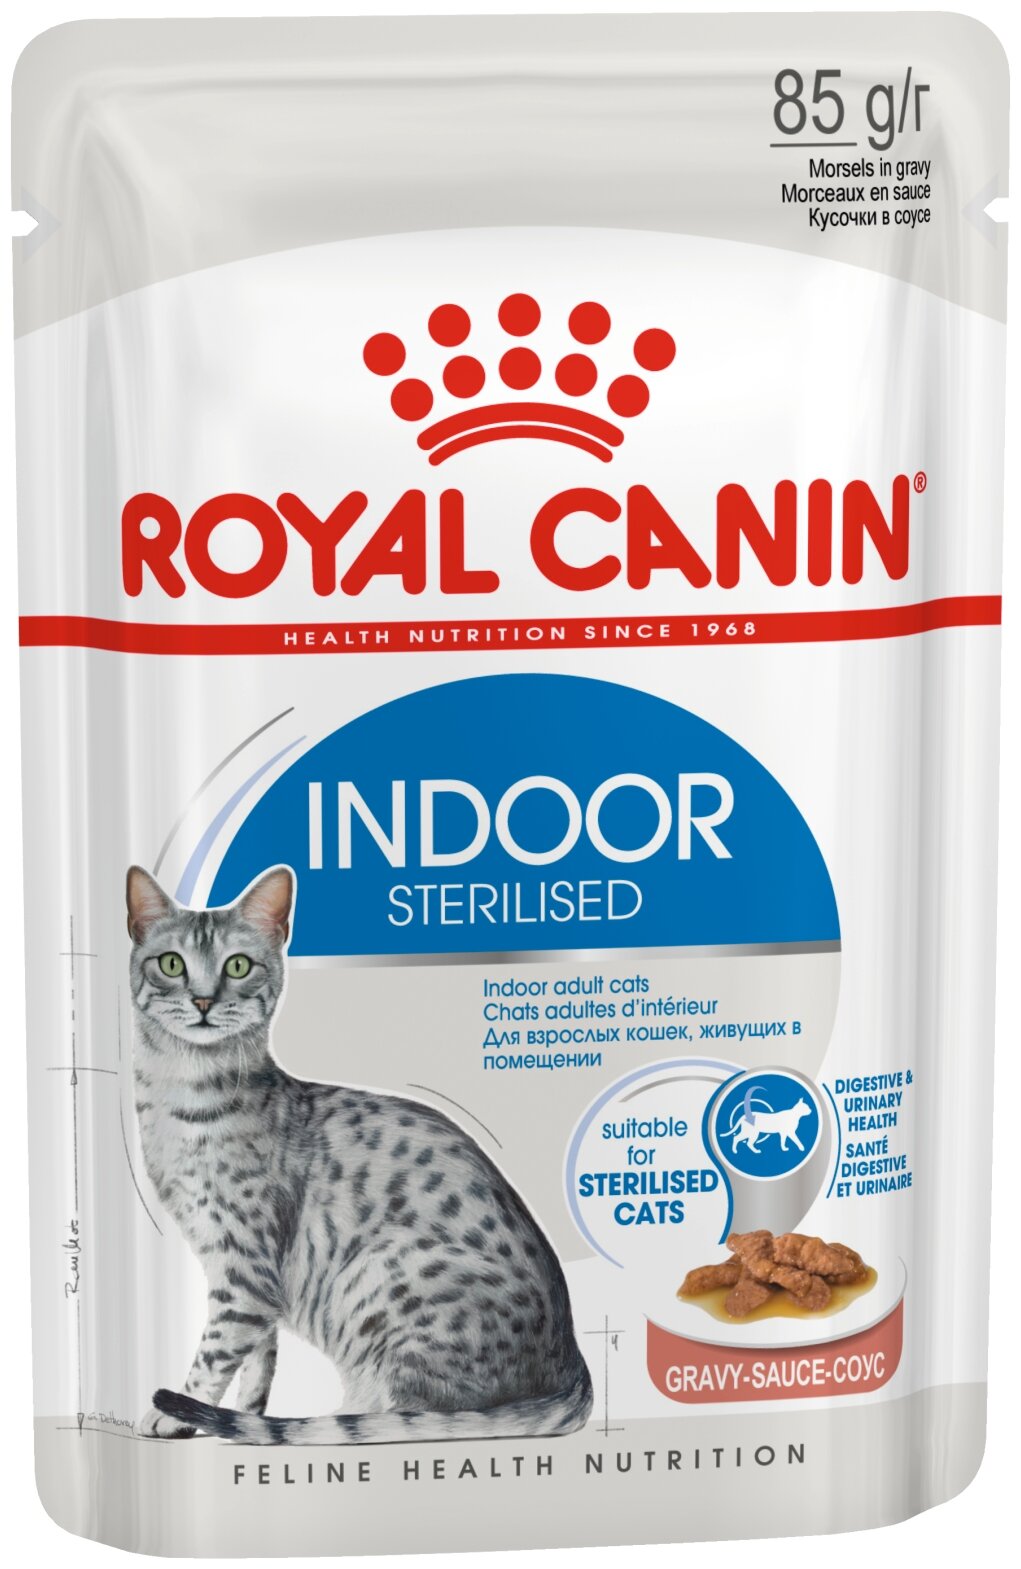 Влажный корм для живущих в помещении стерилизованных Royal Canin Indoor Sterilised 1уп×85гр.×12шт. (кусочки в соусе)